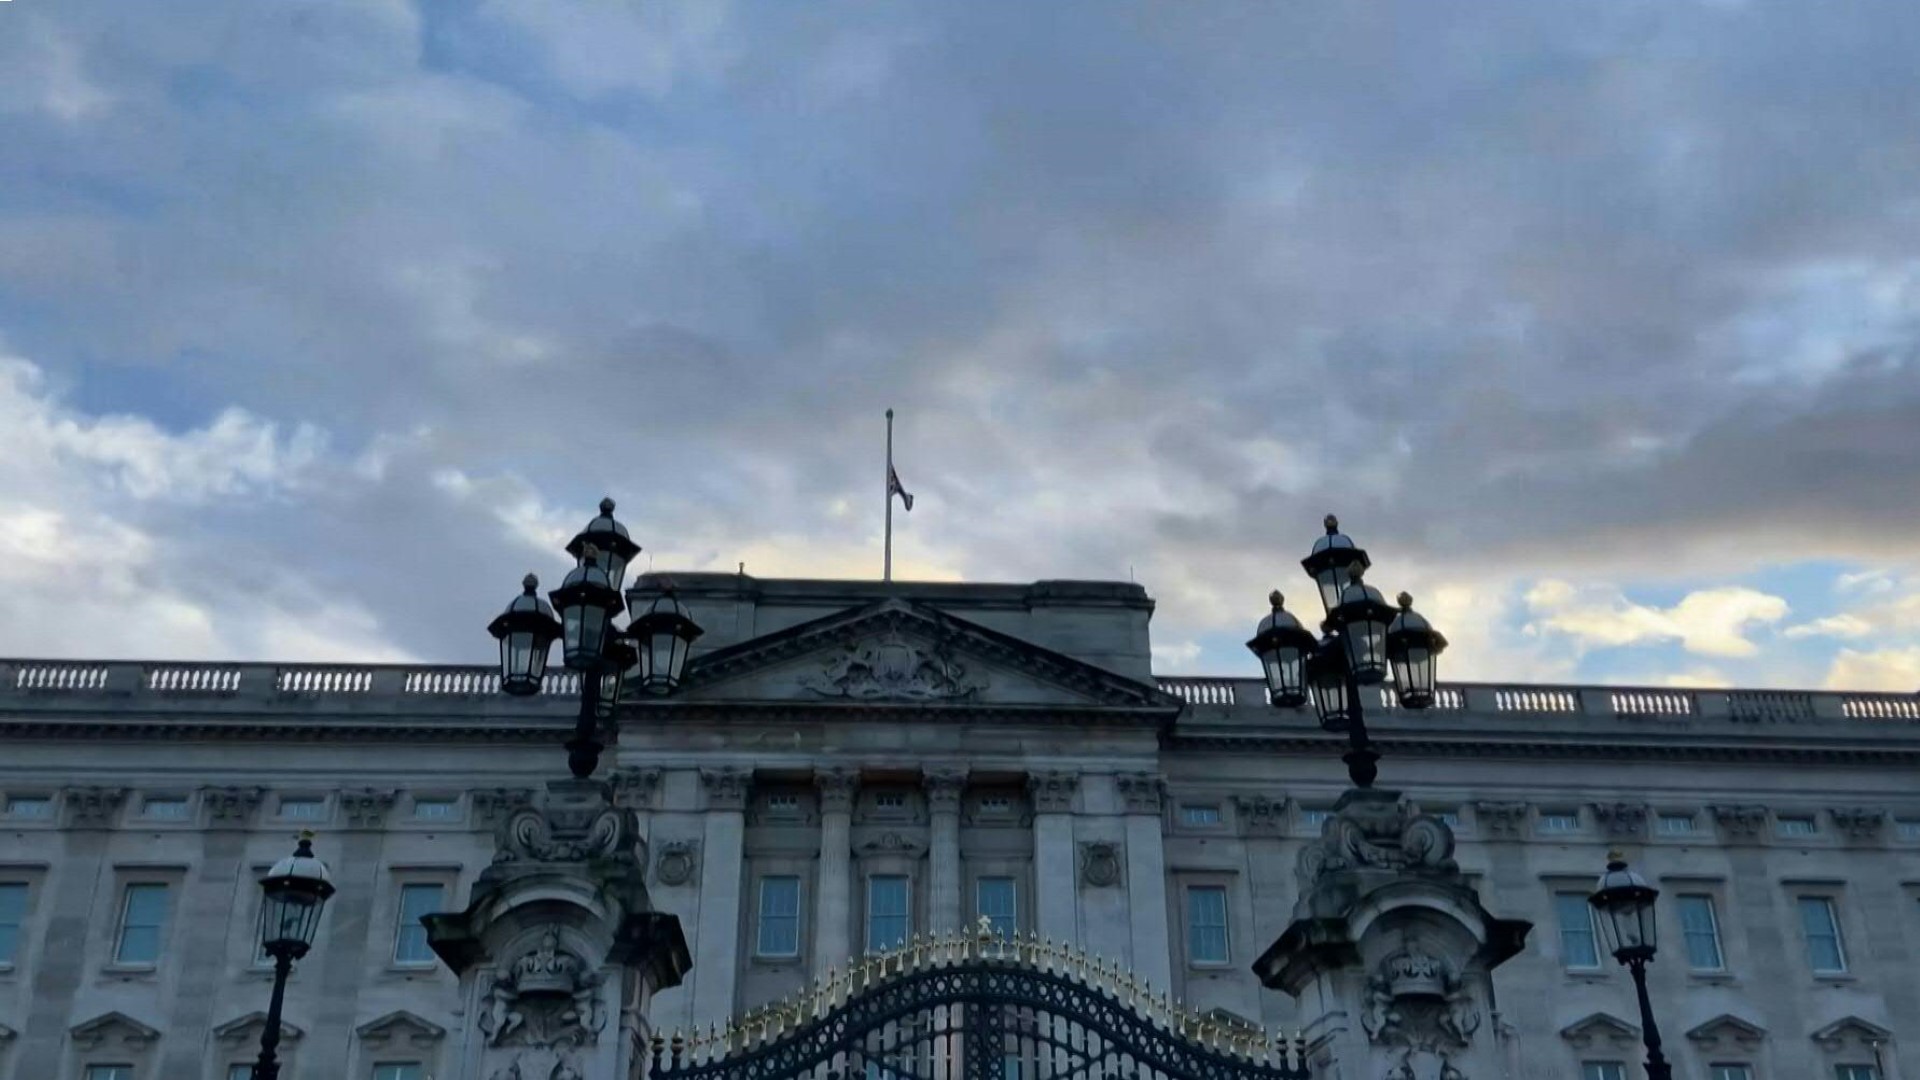 La muerte de la reina Isabel II abrió el viernes un largo periodo de luto para la familia real que se prolongará hasta siete días después de su funeral, cuya fecha aún no fue fijada, informó el Palacio de Buckingham.